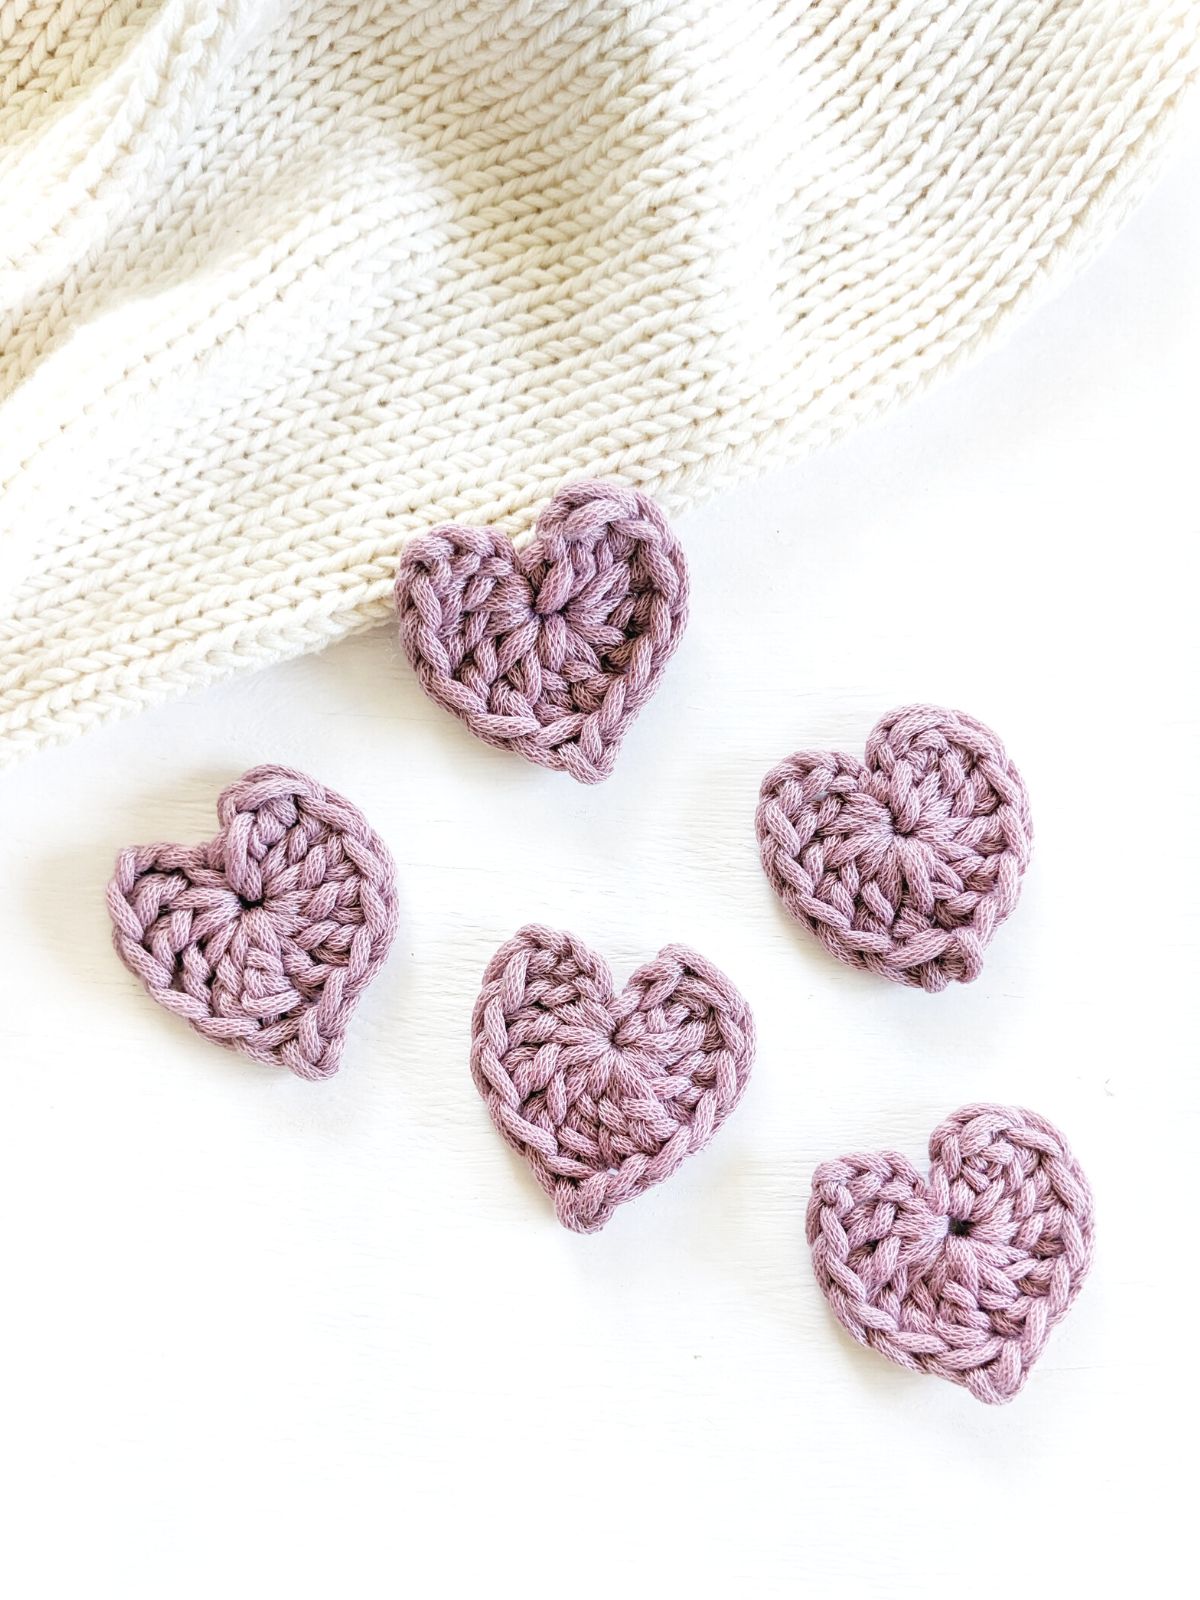 5 mini crochet hearts in the color purple.